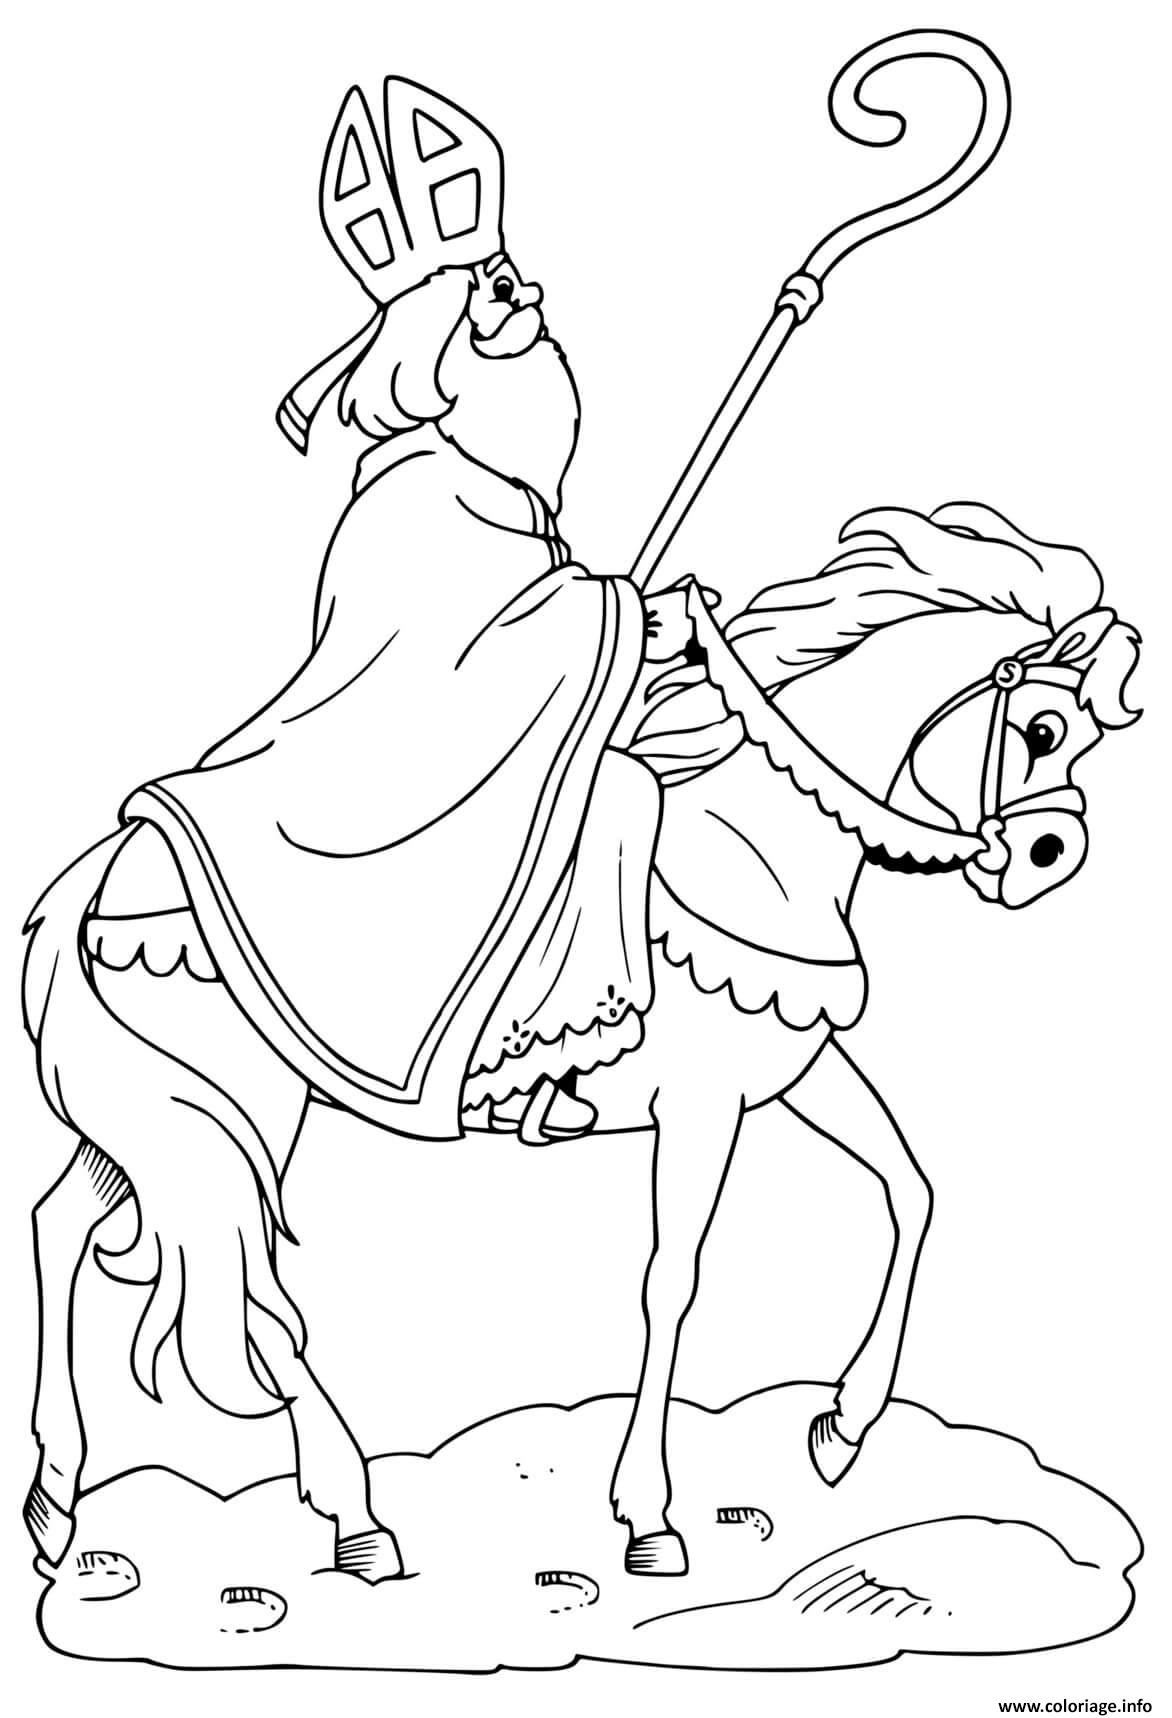 Dessin saint nicolas sur un cheval Coloriage Gratuit à Imprimer